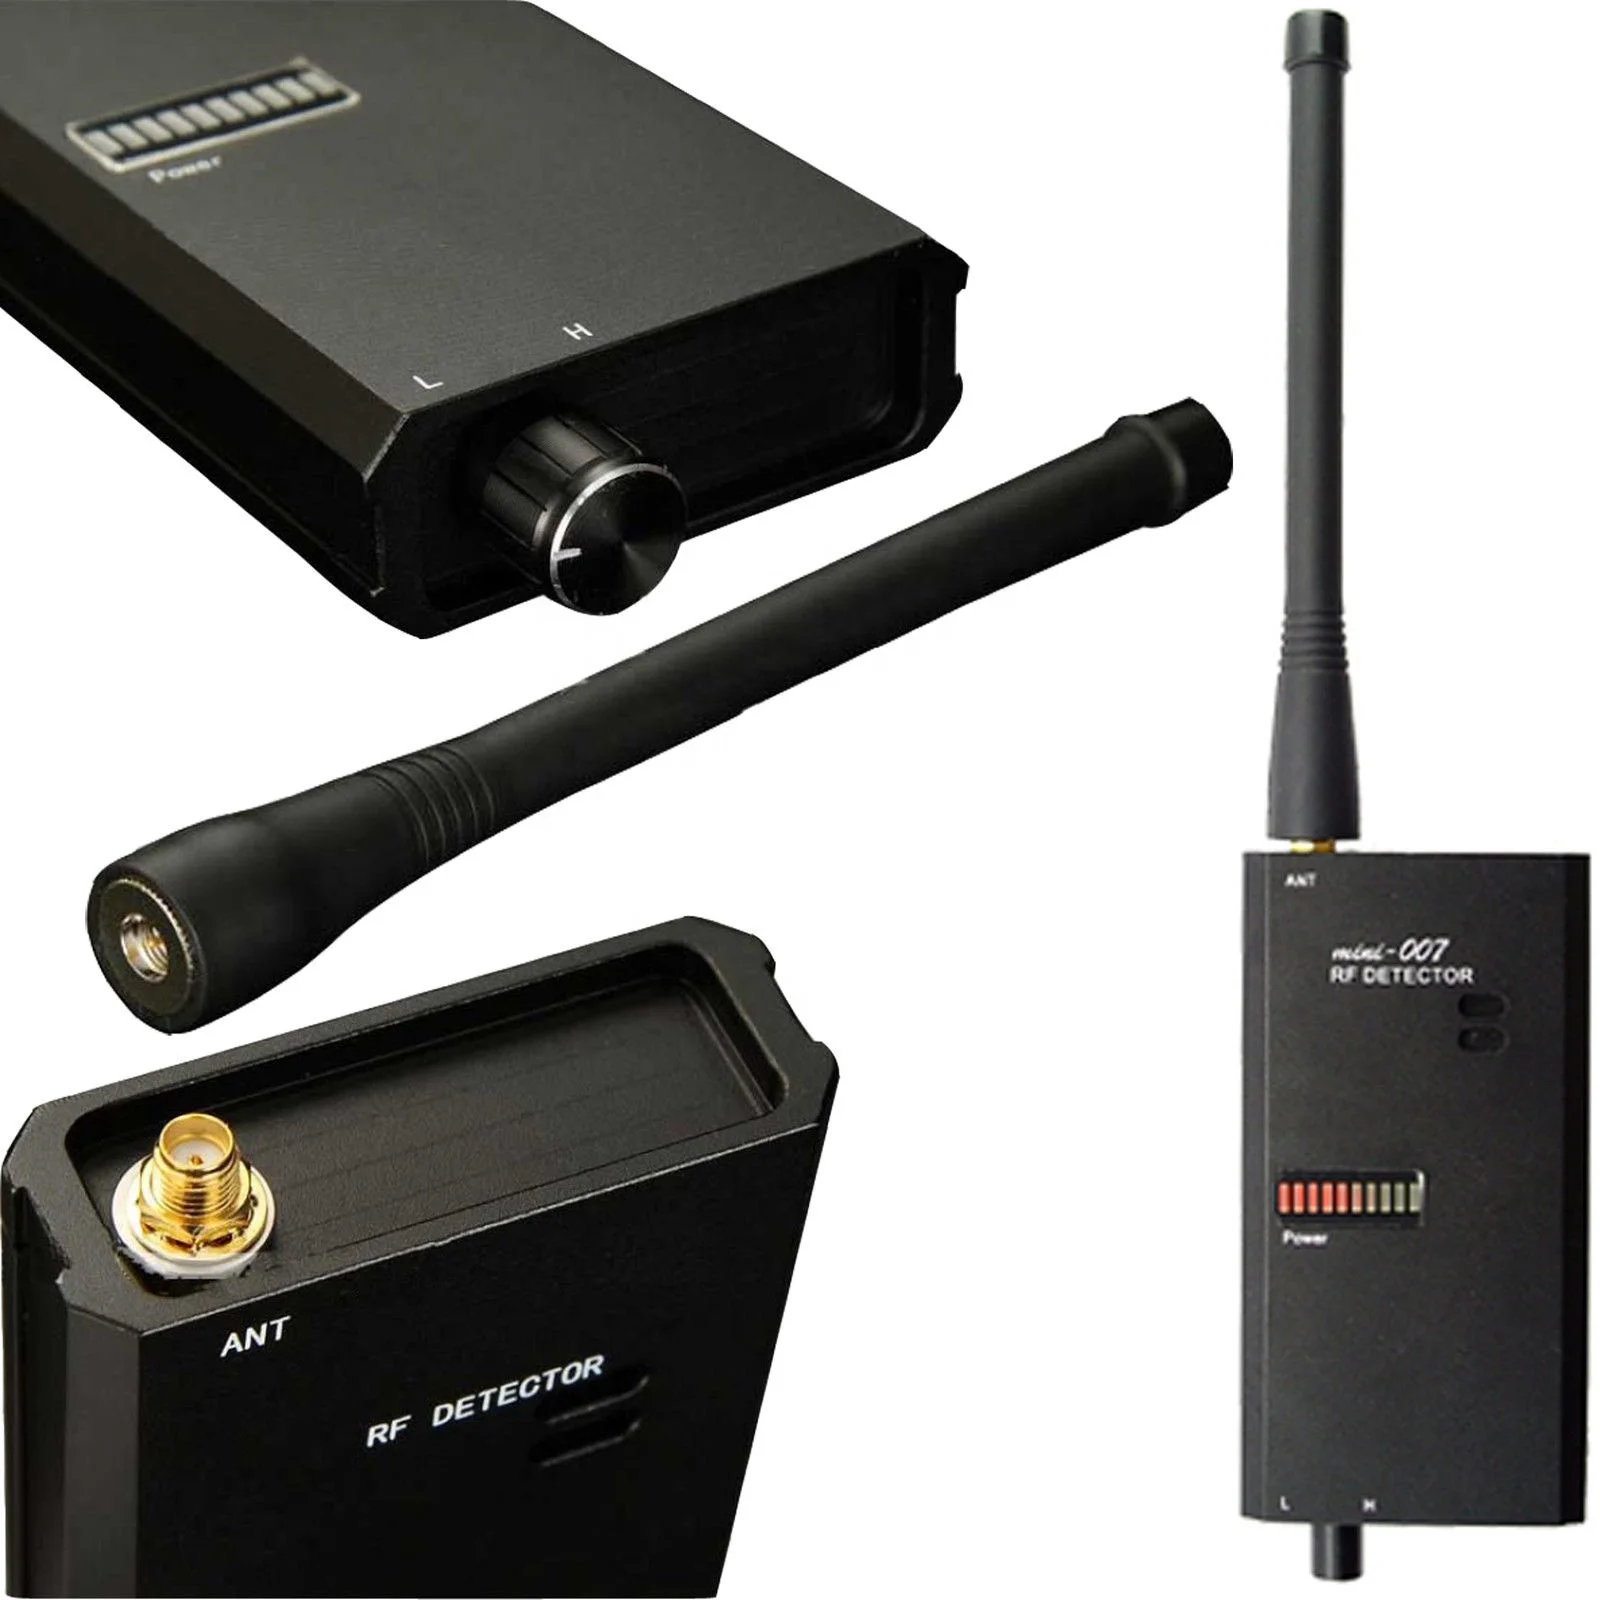 

Мини-сканер, Радиочастотный детектор, устройство отслеживания сигнала, капельница, беспроводной детектор камеры